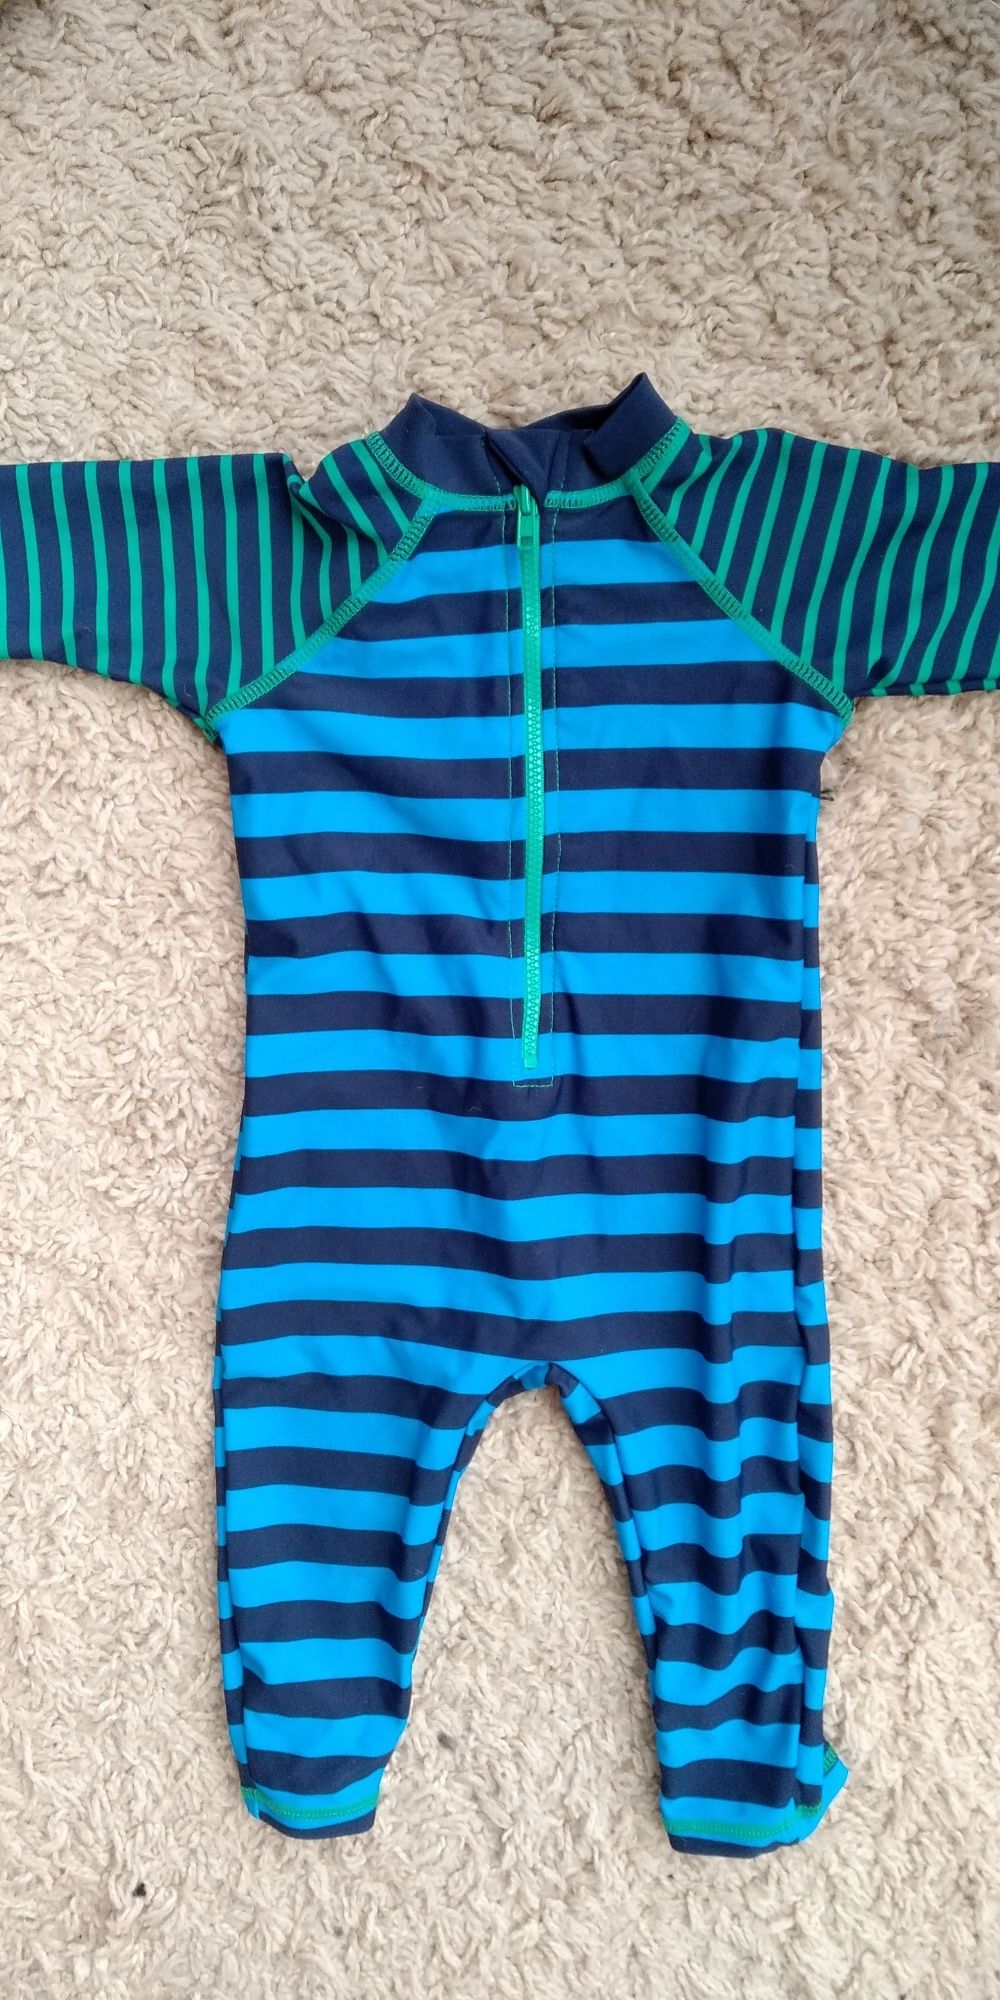 Аквакостюм и плавки-шорты на мальчика 6-9 месяцев